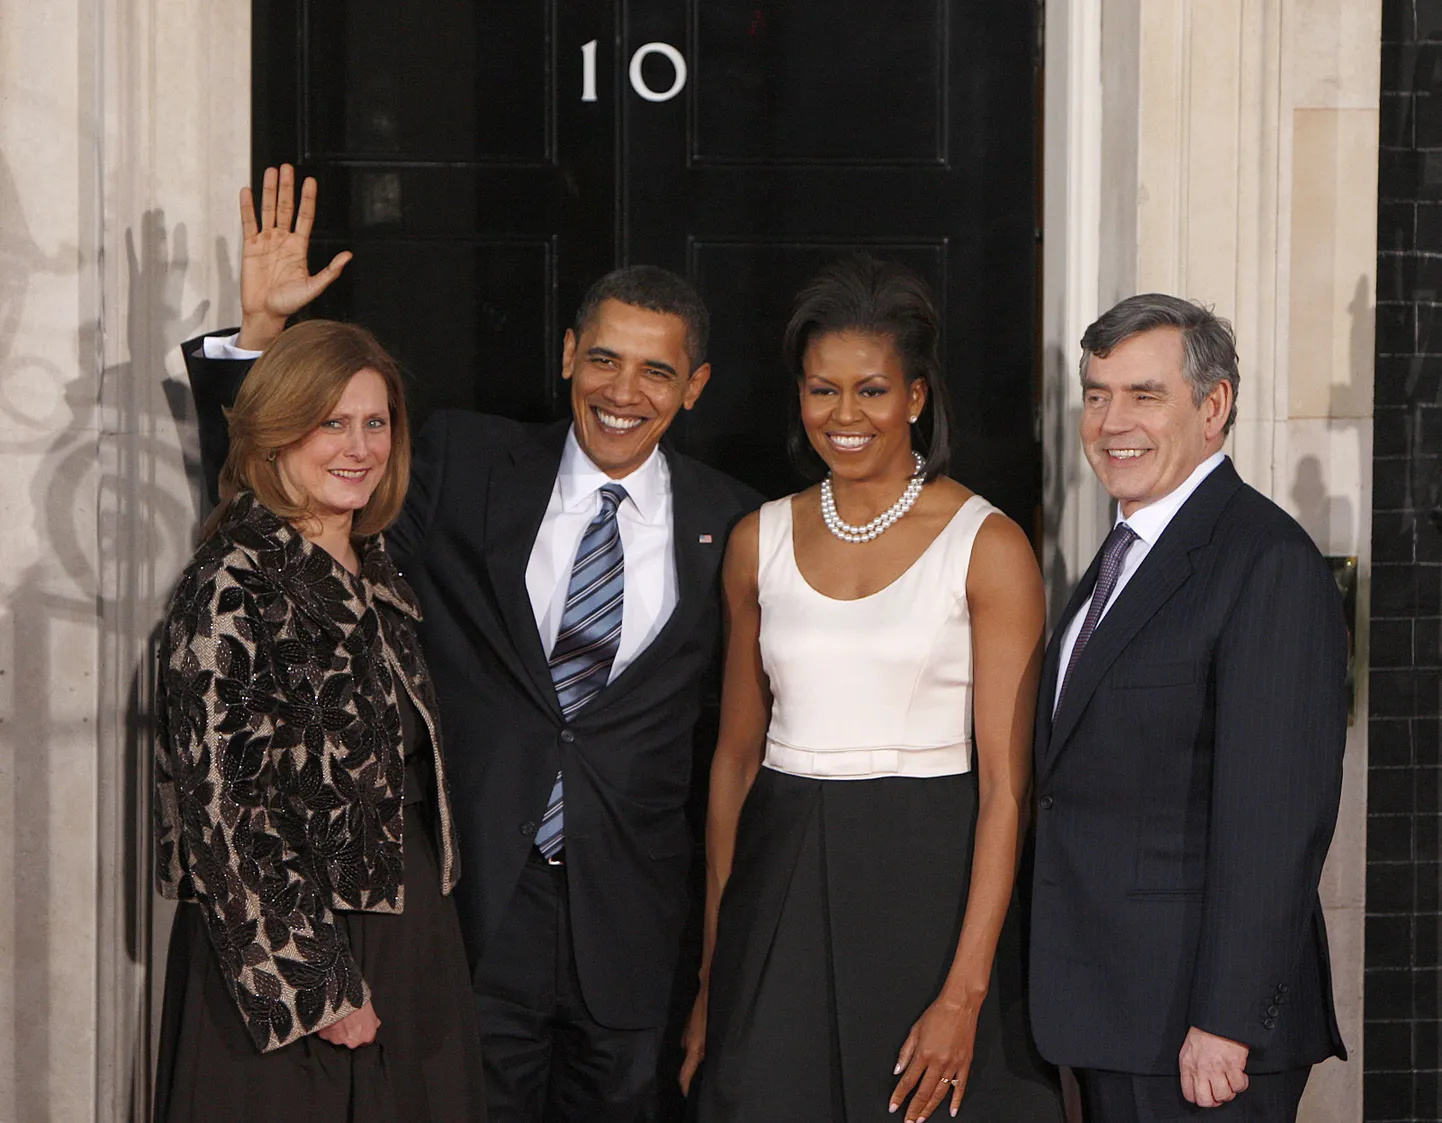 Briti peaminister Gordon Brown oma abikaasaga tervitamas koduuksel USA presidenti Barack Obamat ja tema naist (kaks keskmist).